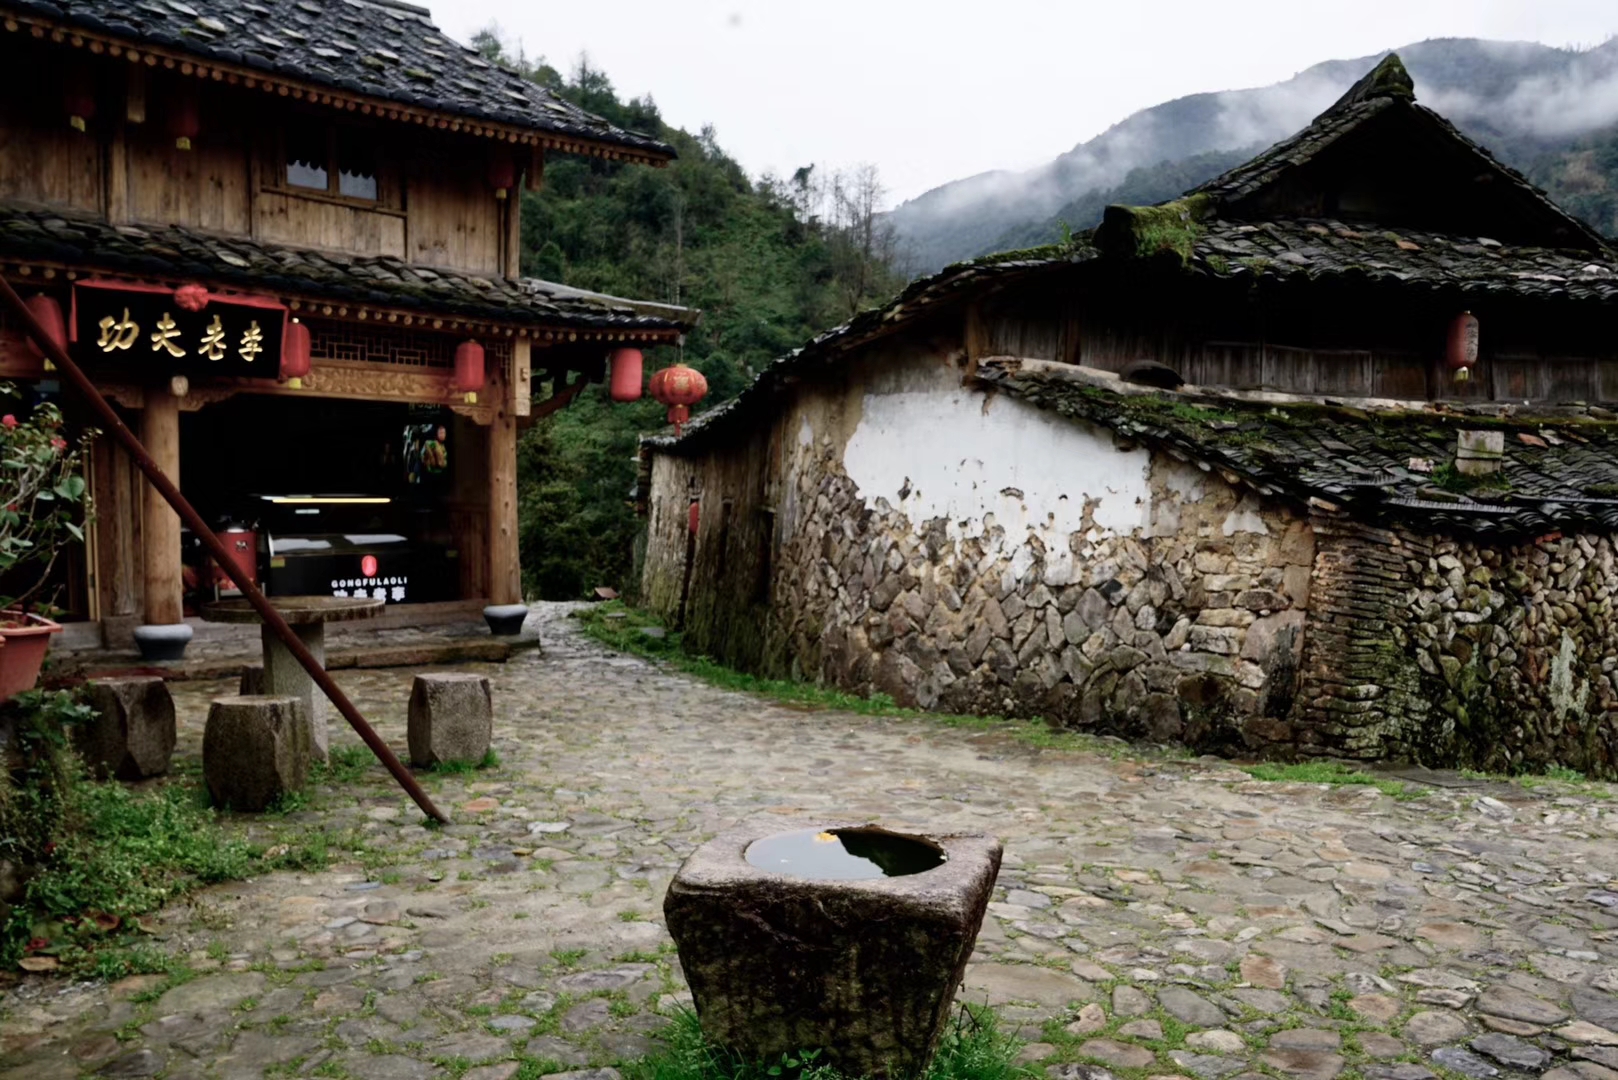 天气不错,正值春天踏青的美好季节,来到位于浙江苍南的一处古老村落